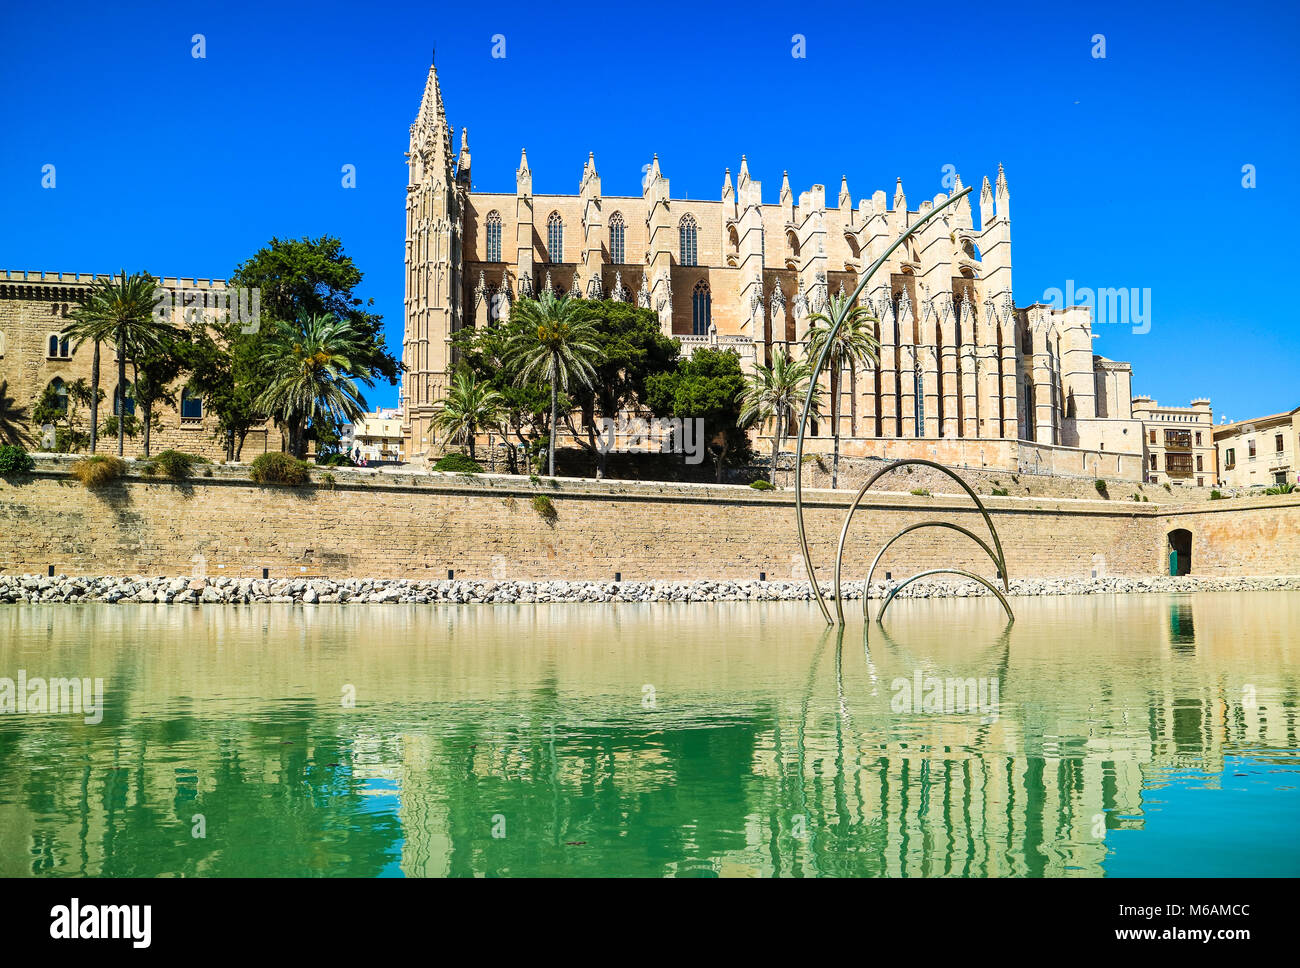 Palma de Mallorca, Spanien. La Seu - Die berühmten mittelalterlichen gotischen Kathedrale in der Hauptstadt der Insel Stockfoto